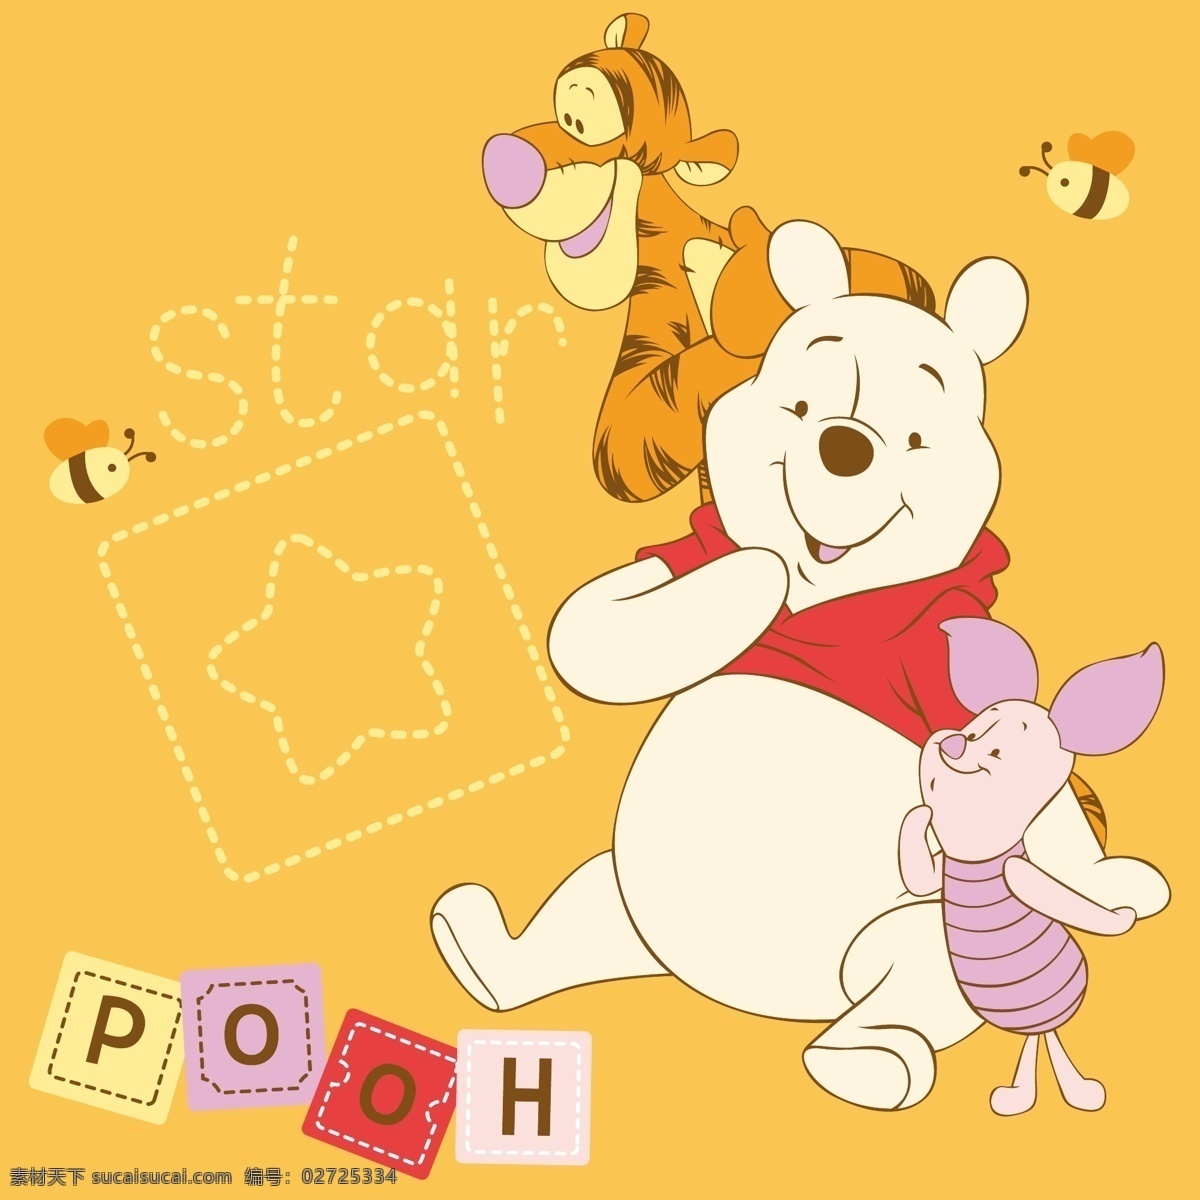 维尼熊 跳跳虎 粉红猪 蜜蜂 星星 卡通设计 矢量